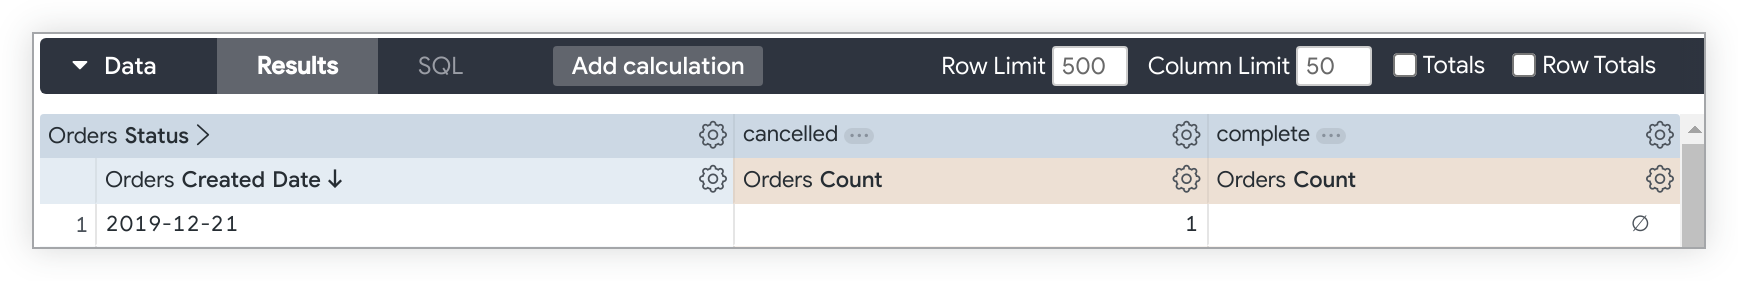 Consulta de exploración con los valores de Orders Created Date y Orders Count que cambian los valores del campo Orders Status cancelados y completados.